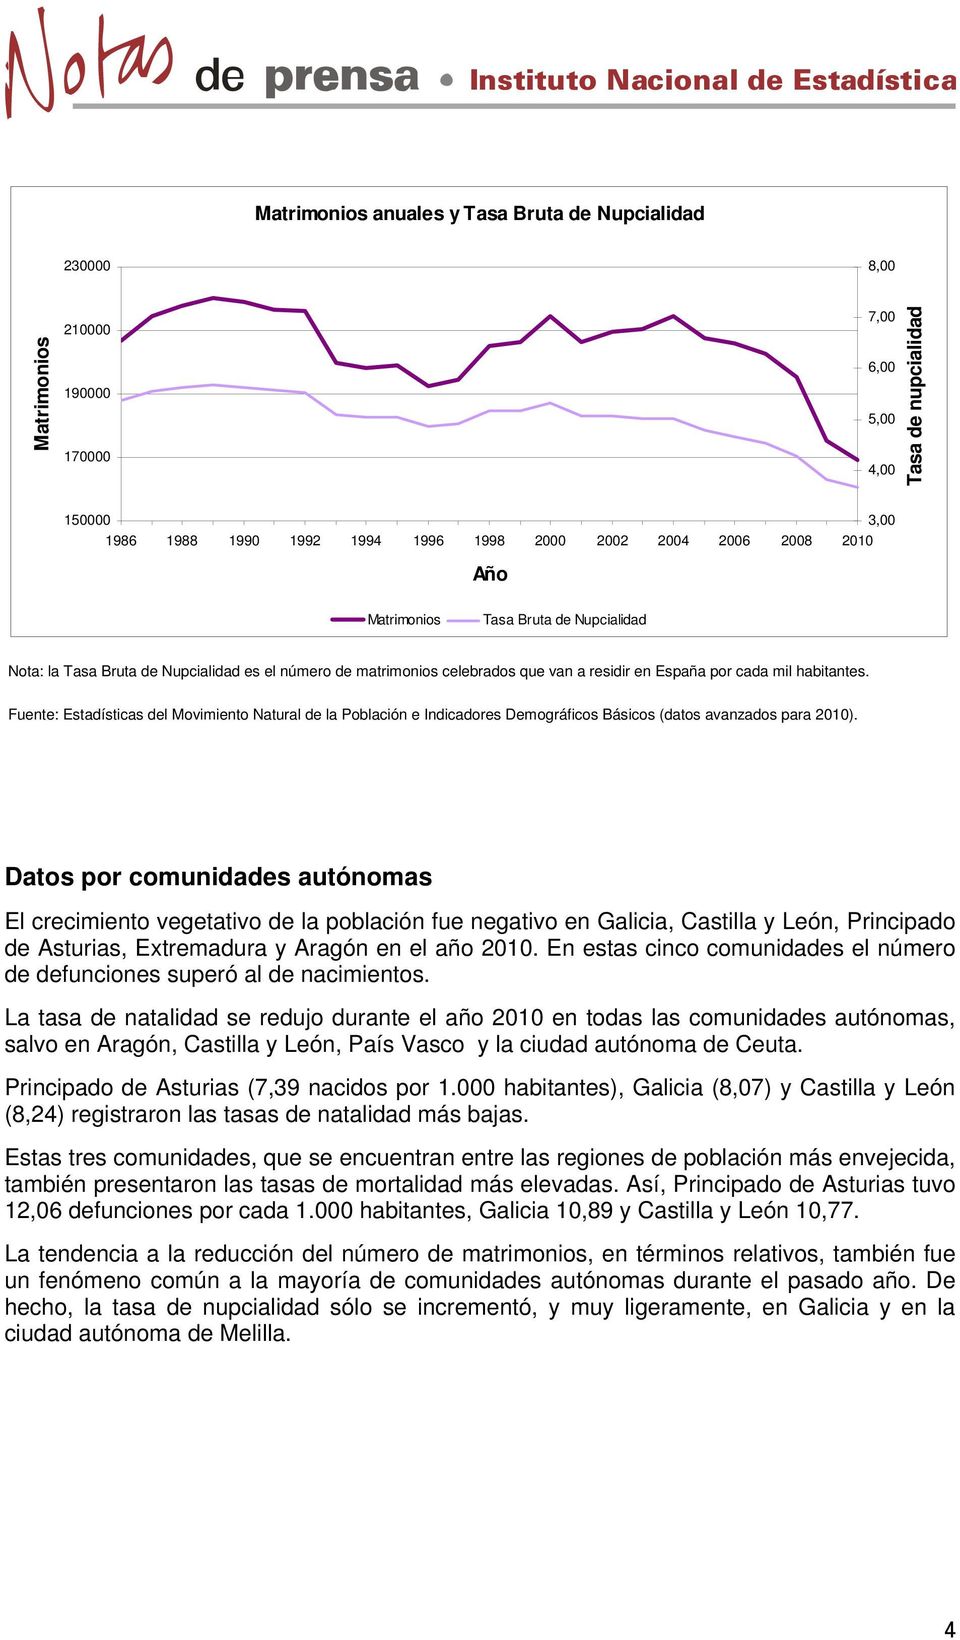 Fuente: Estadísticas del Movimiento Natural de la Población e Indicadores Demográficos Básicos (datos avanzados para 2010).